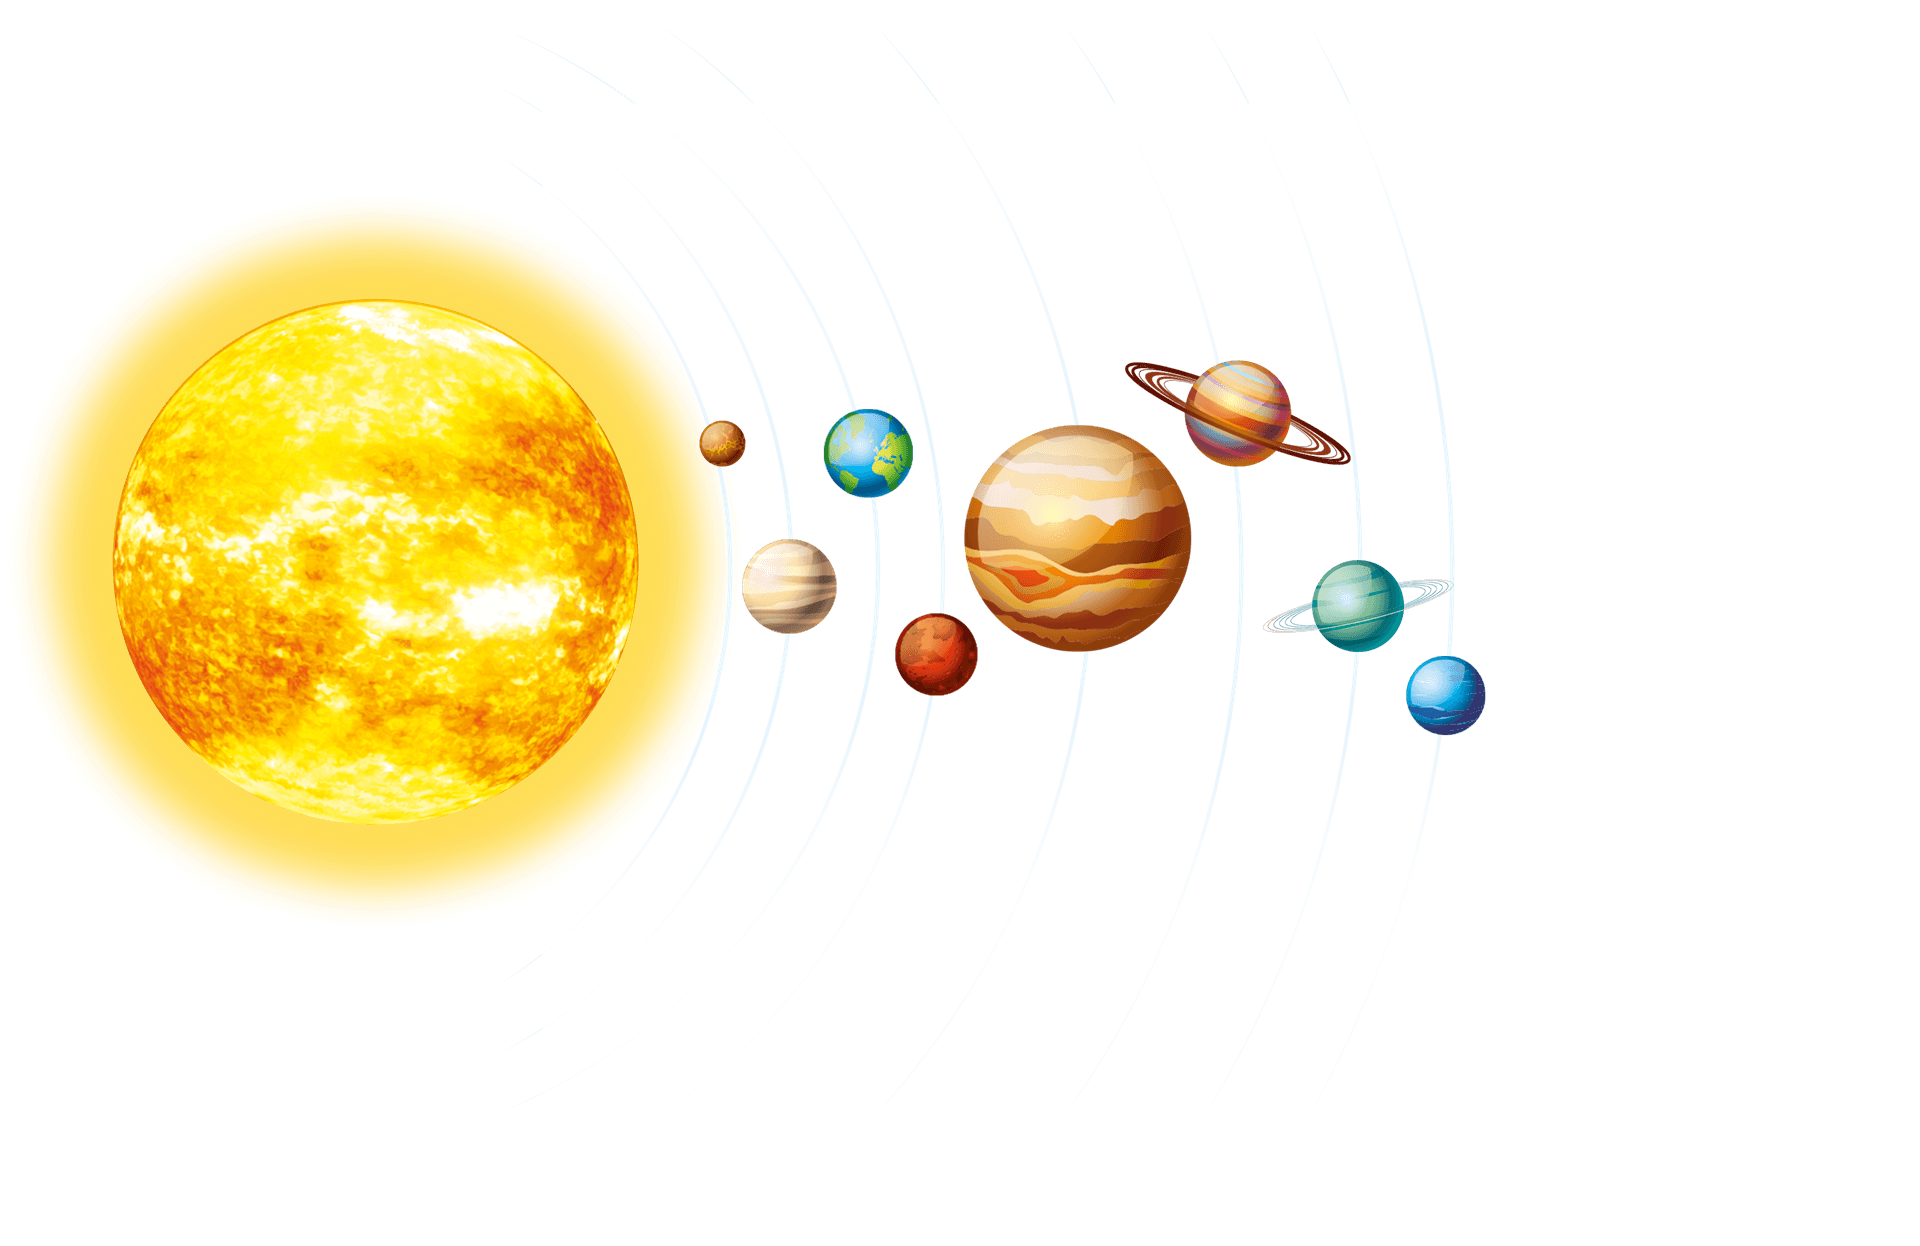 Saulės sistema